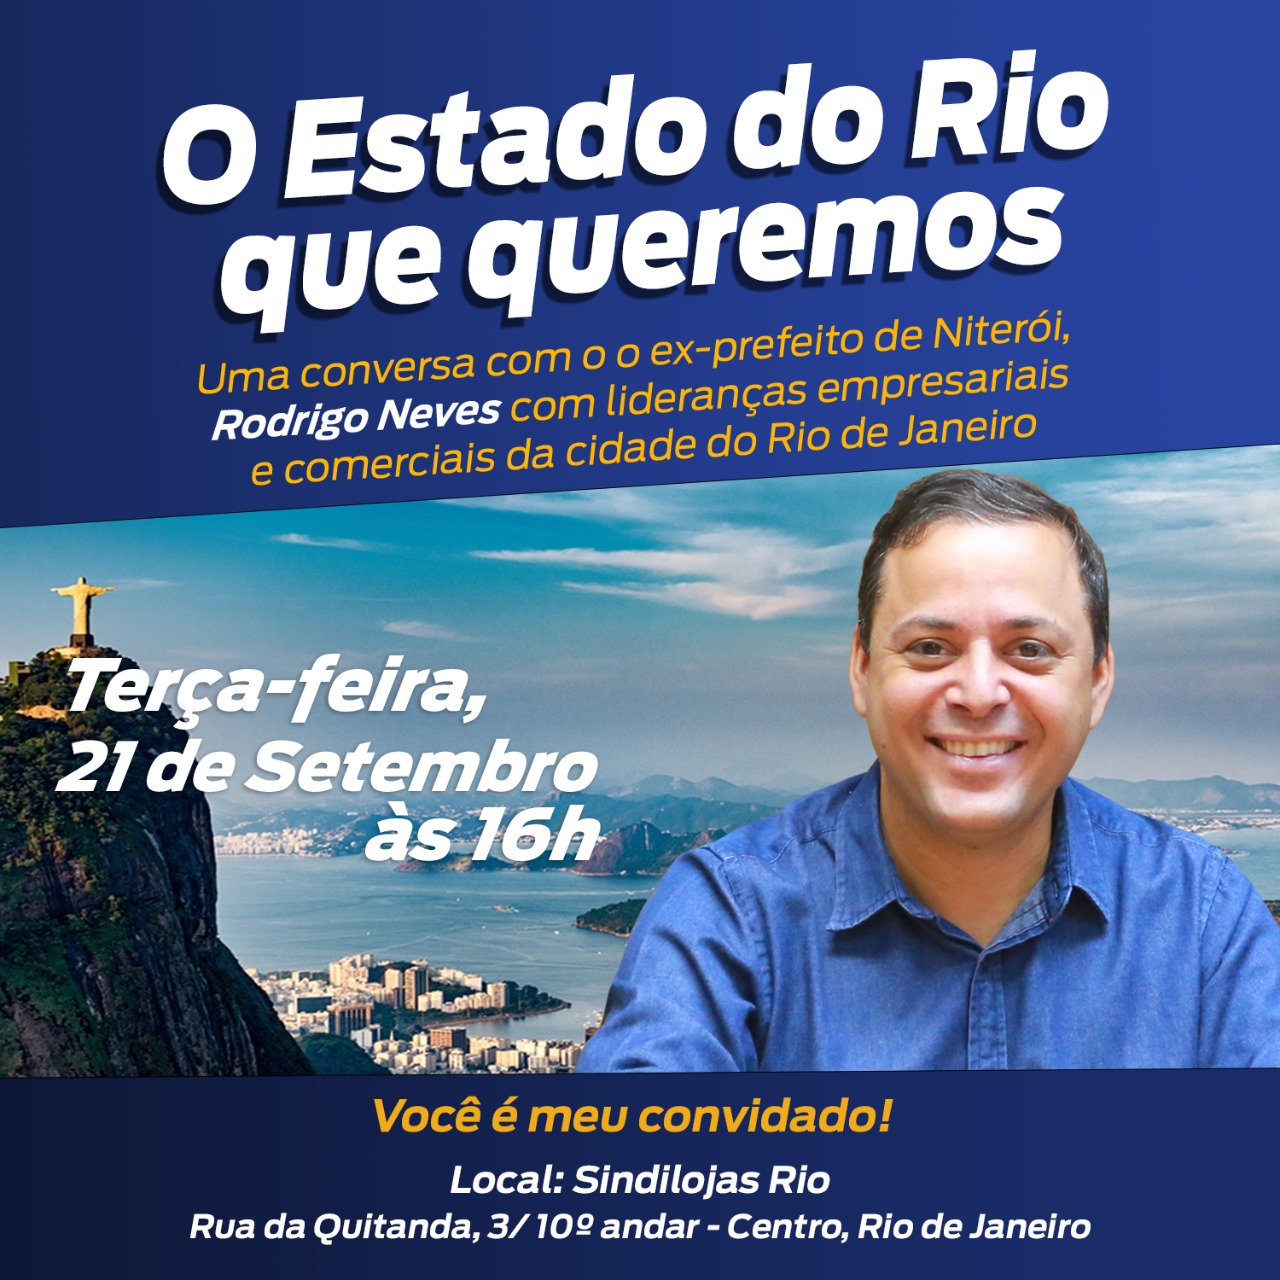 You are currently viewing O Estado do Rio que queremos